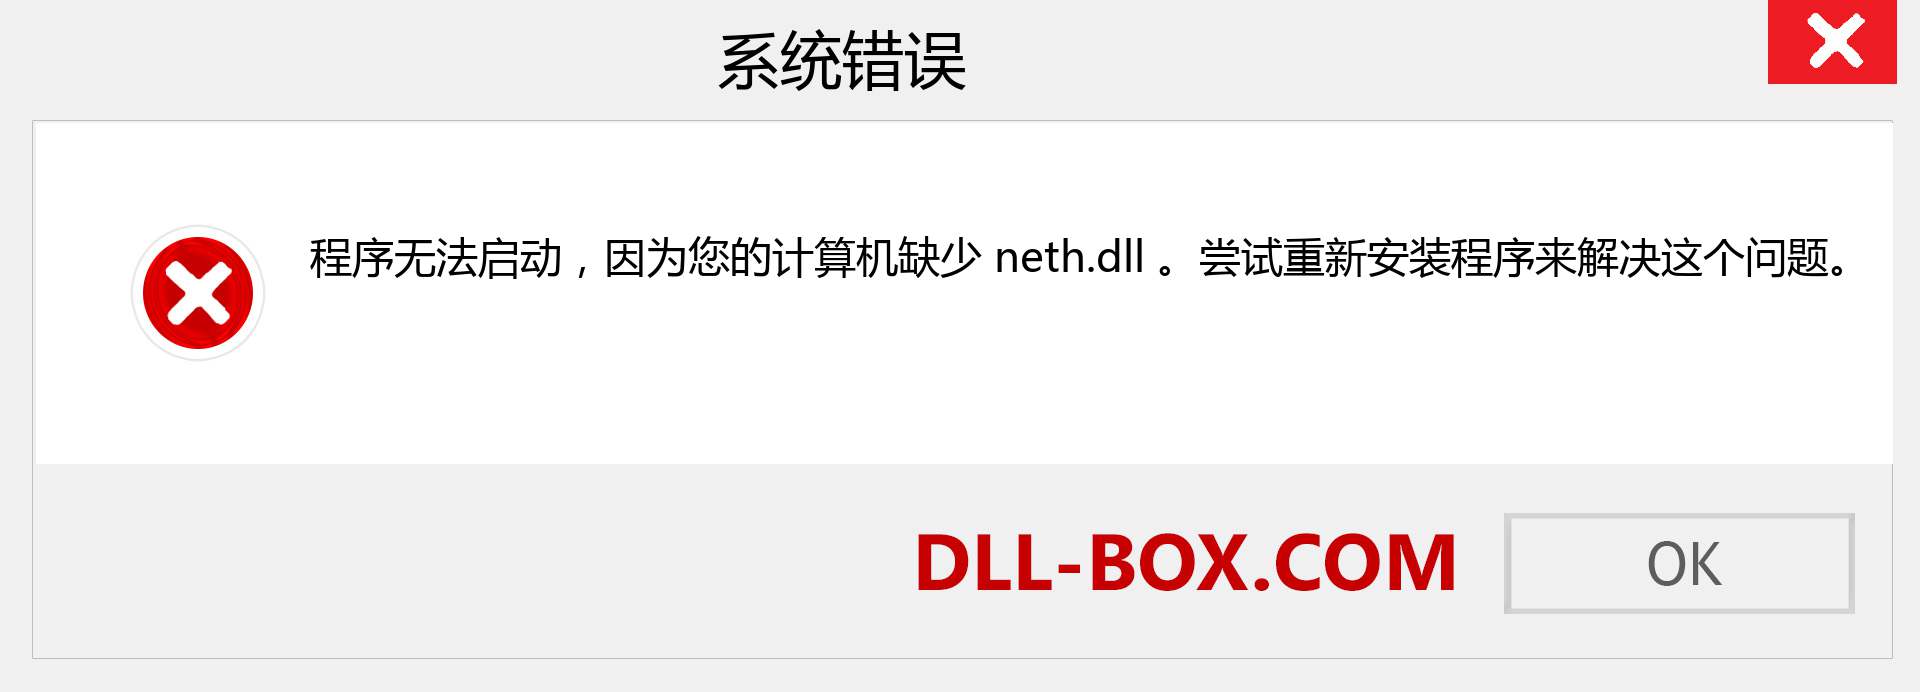 neth.dll 文件丢失？。 适用于 Windows 7、8、10 的下载 - 修复 Windows、照片、图像上的 neth dll 丢失错误